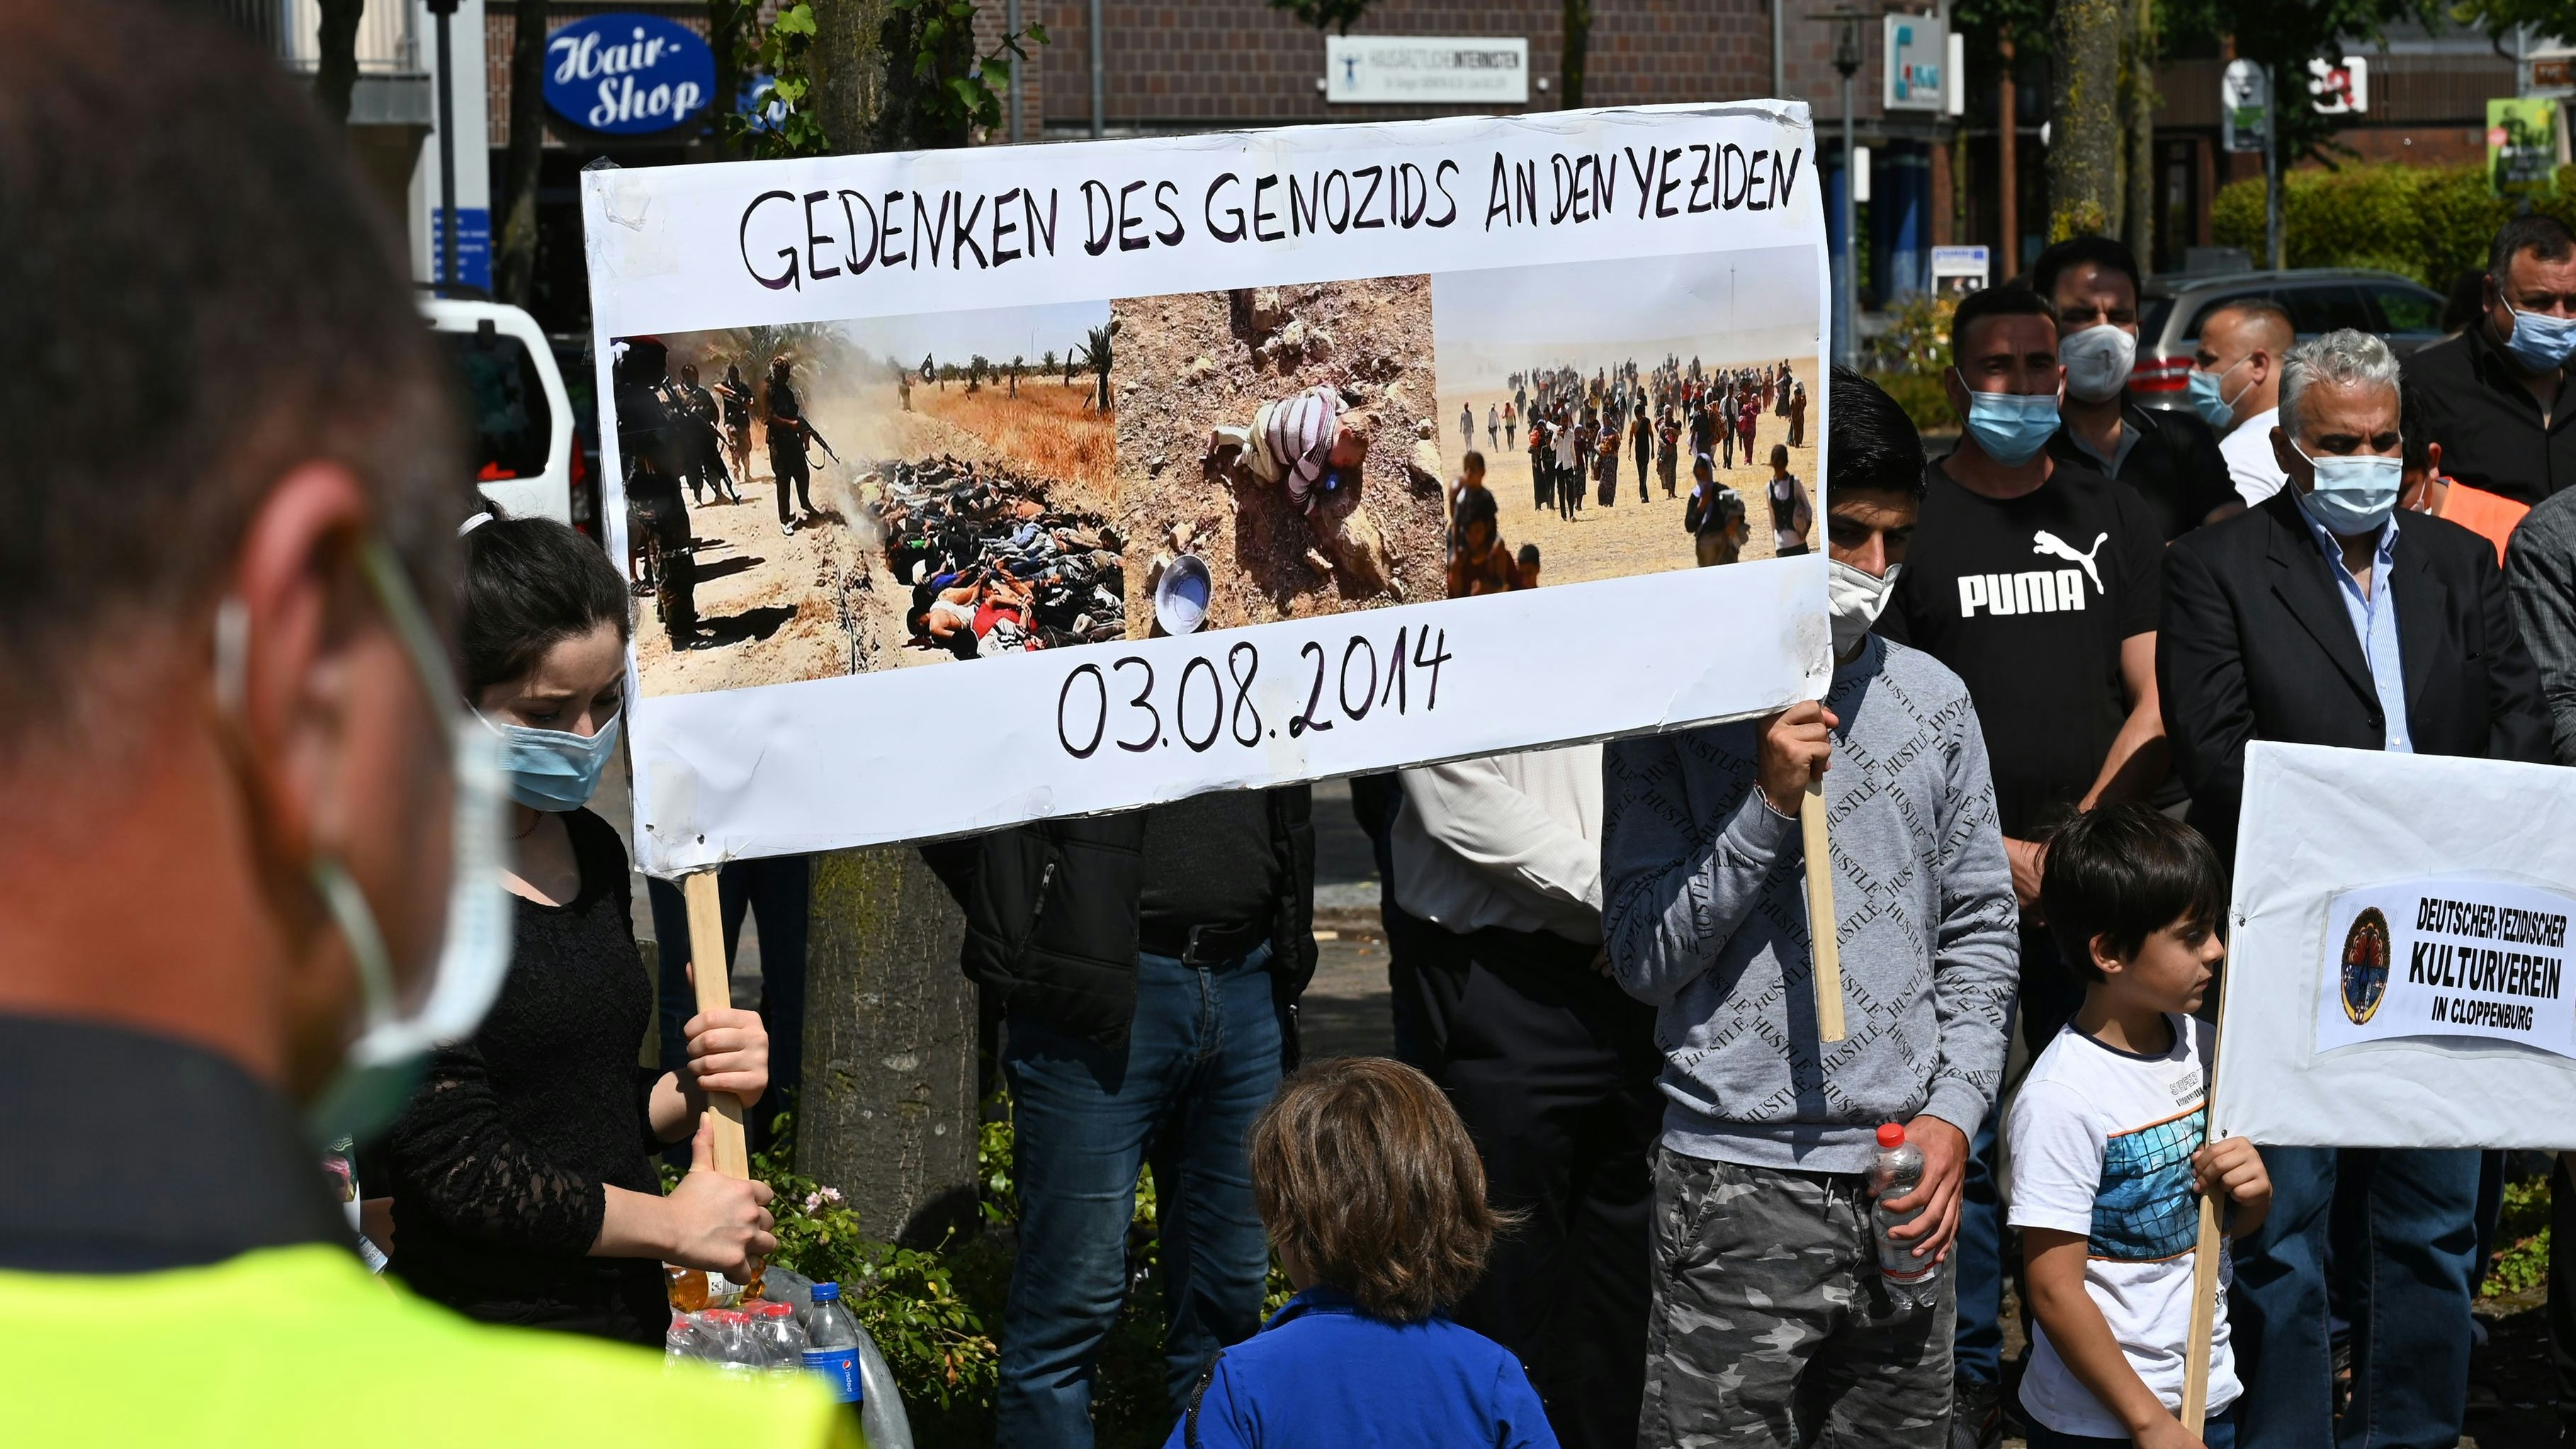 Regelmäßiger Gedenktag: Der Cloppenburger Verein hält die Veranstaltung einmal im Jahr ab. Archivfoto: Hermes